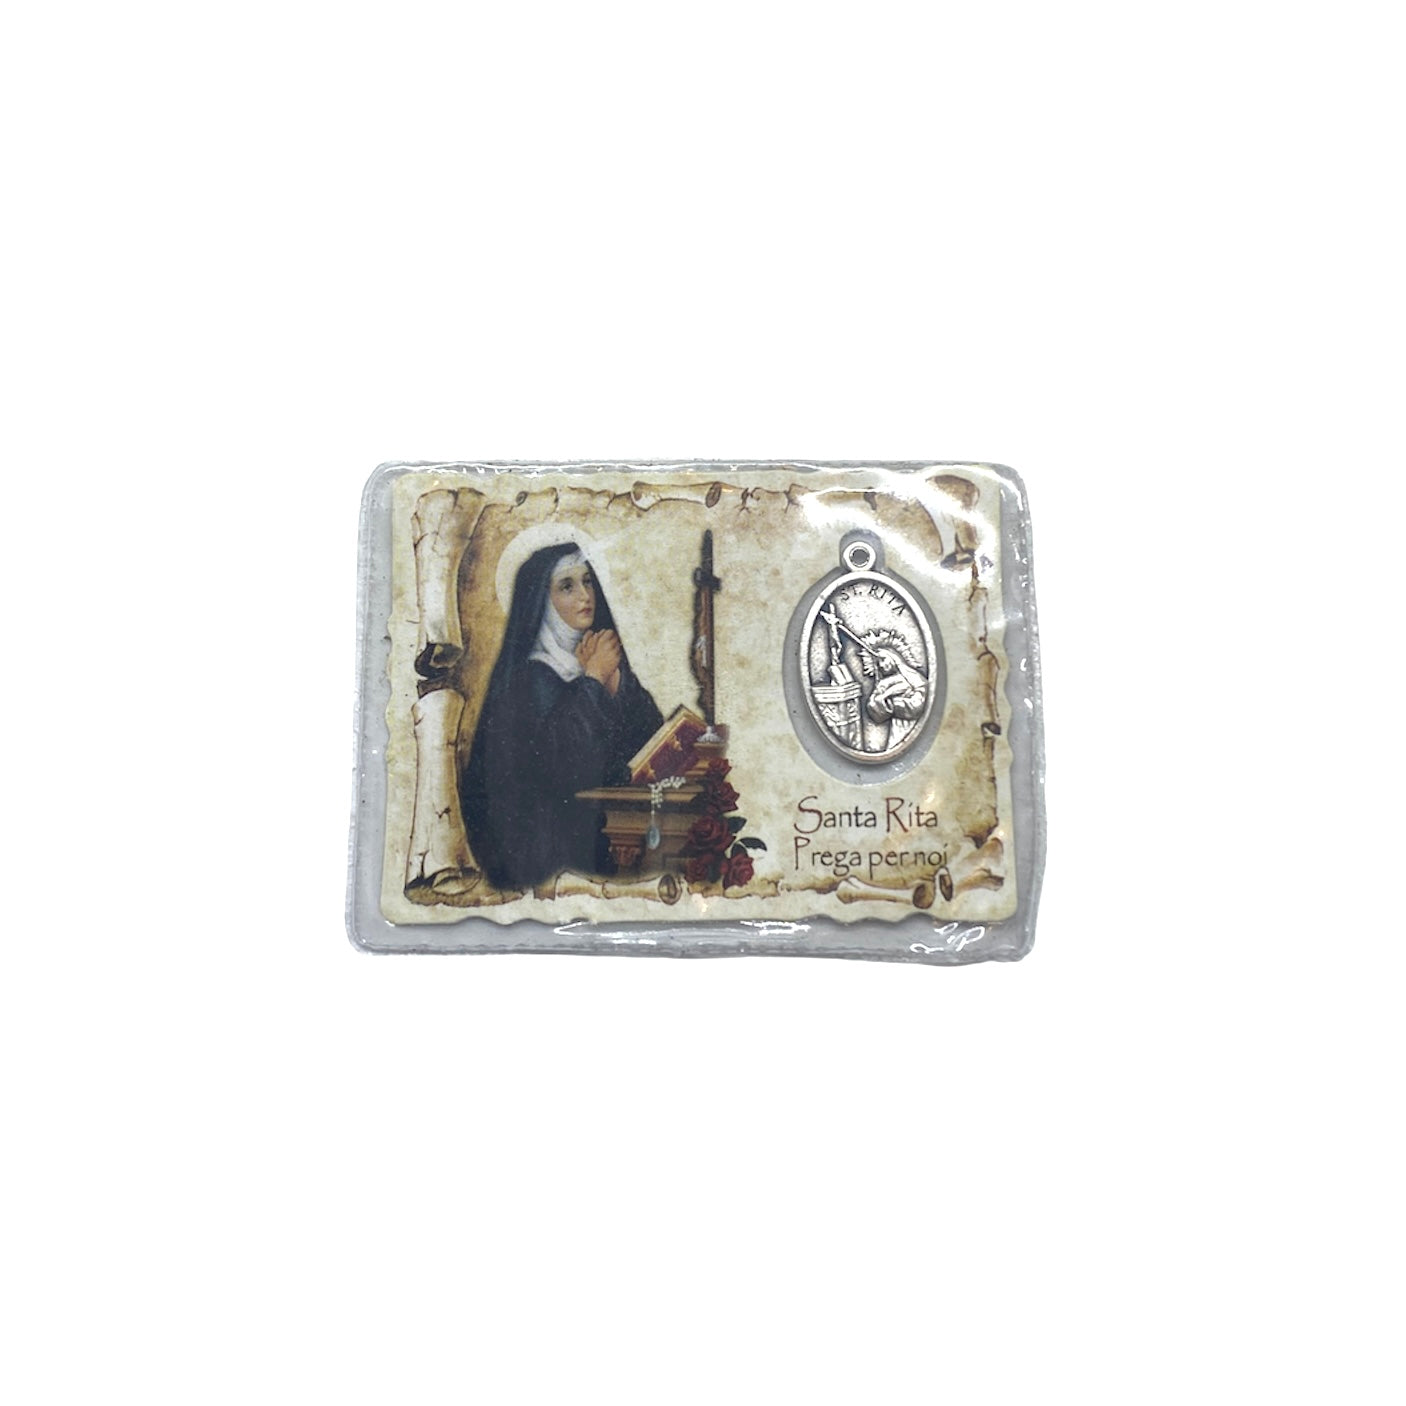 Taschetta Santa Rita con immagine e preghiera